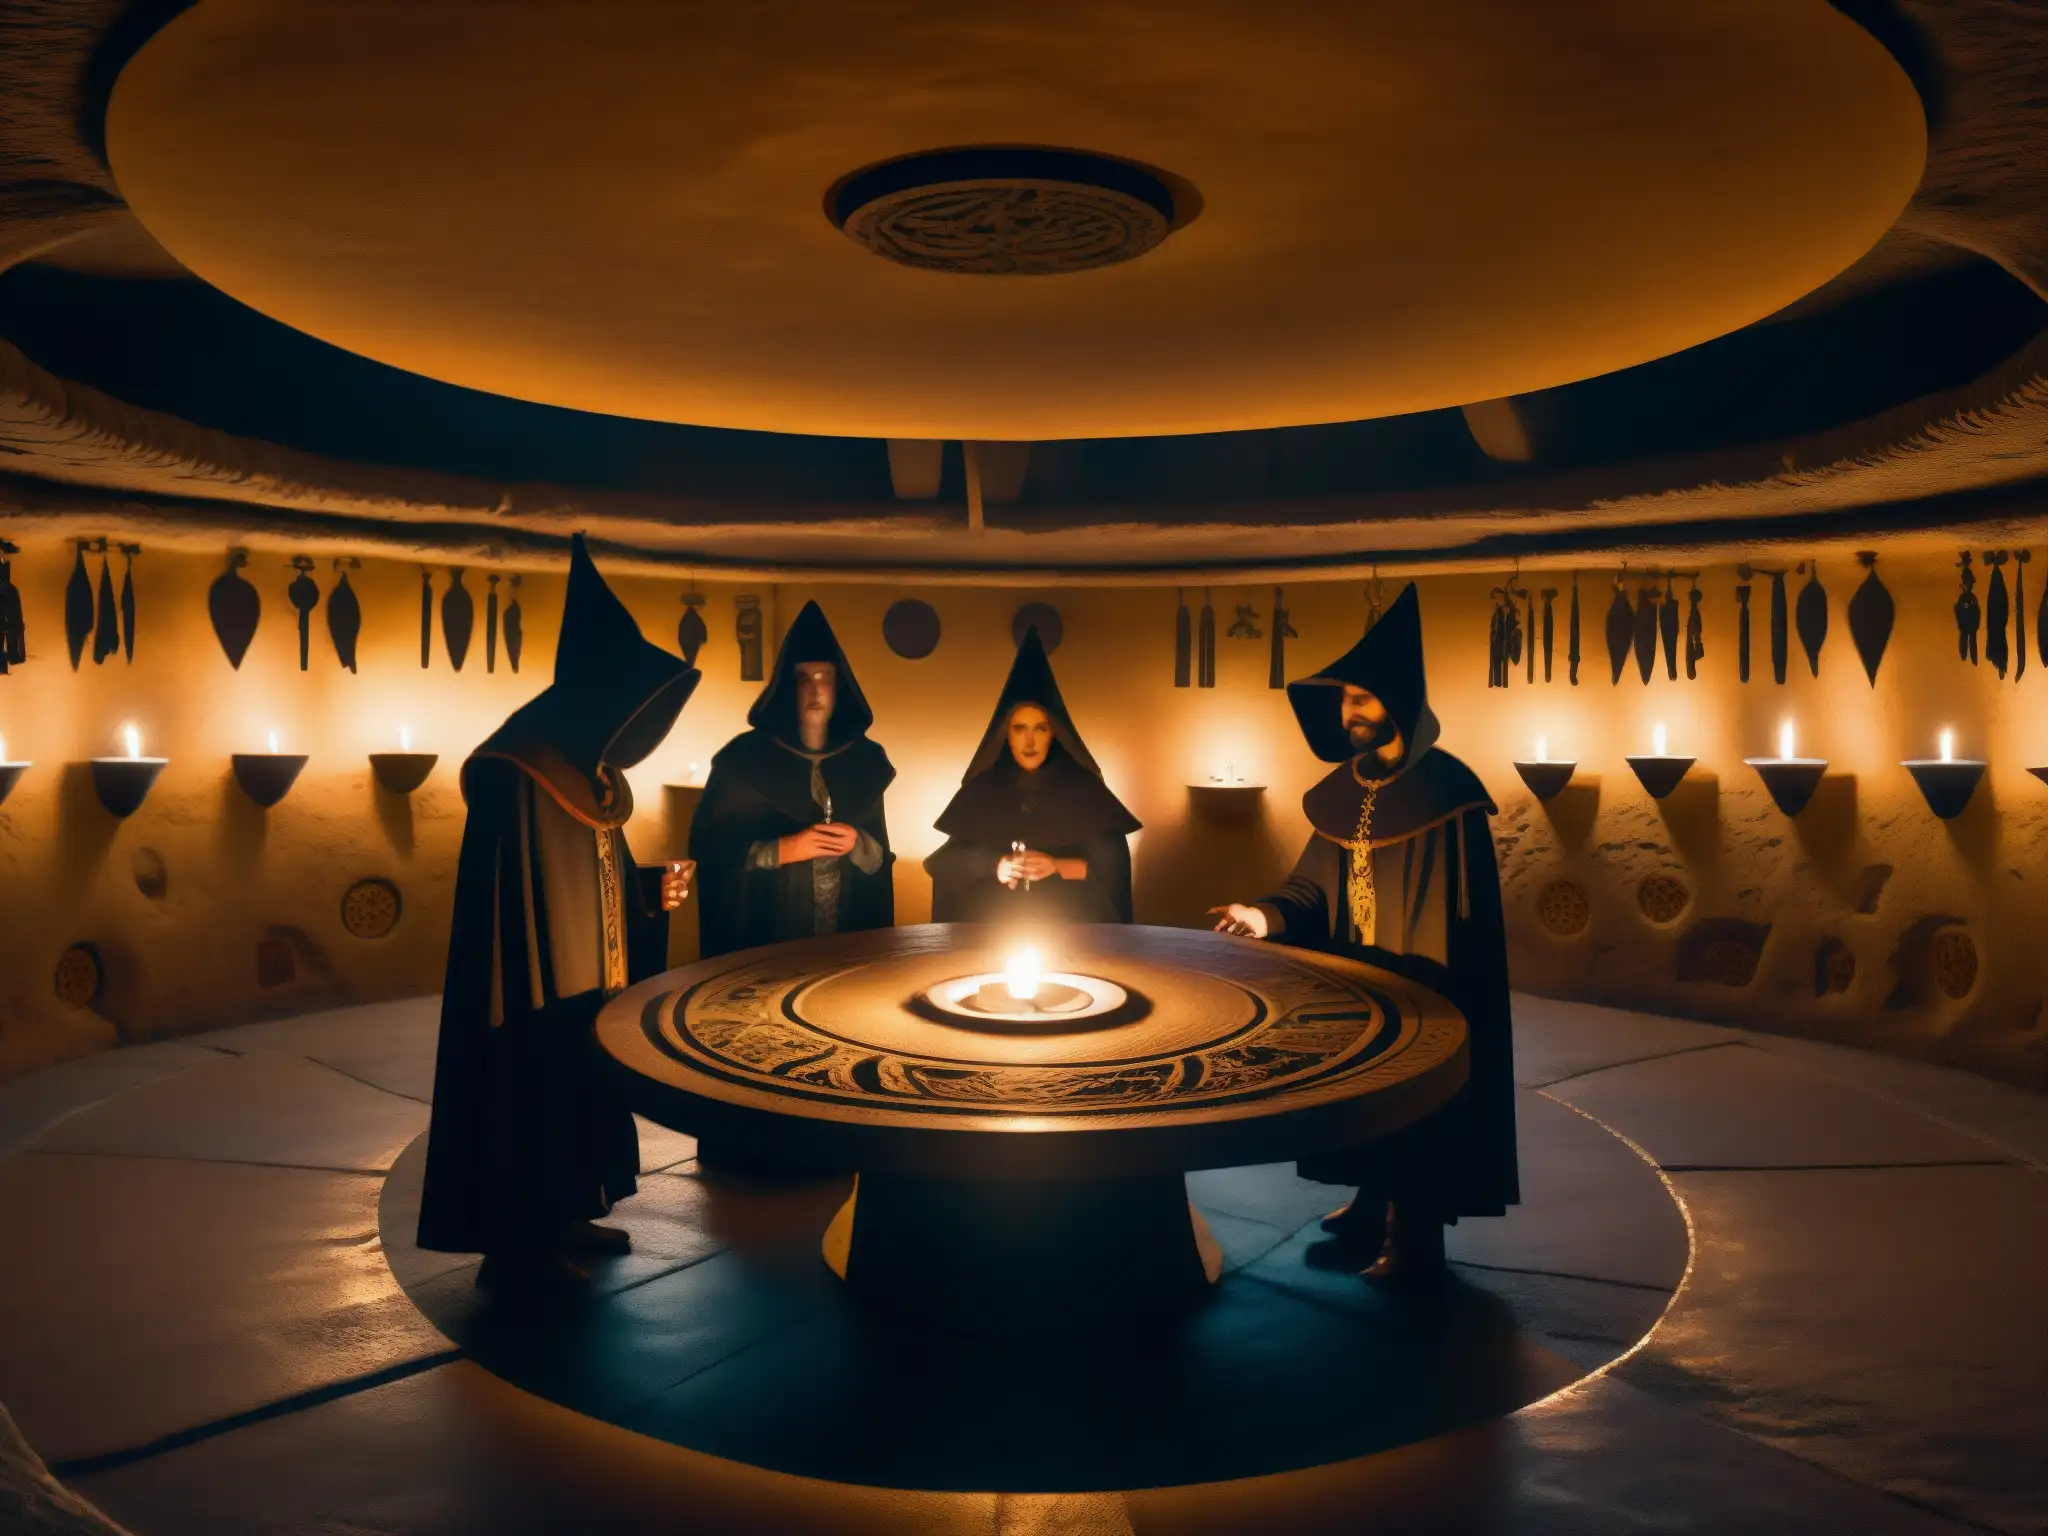 Rituales secretos en el misterioso Club Bohemio: figuras en capuchas alrededor de la mesa, con velas y símbolos esotéricos